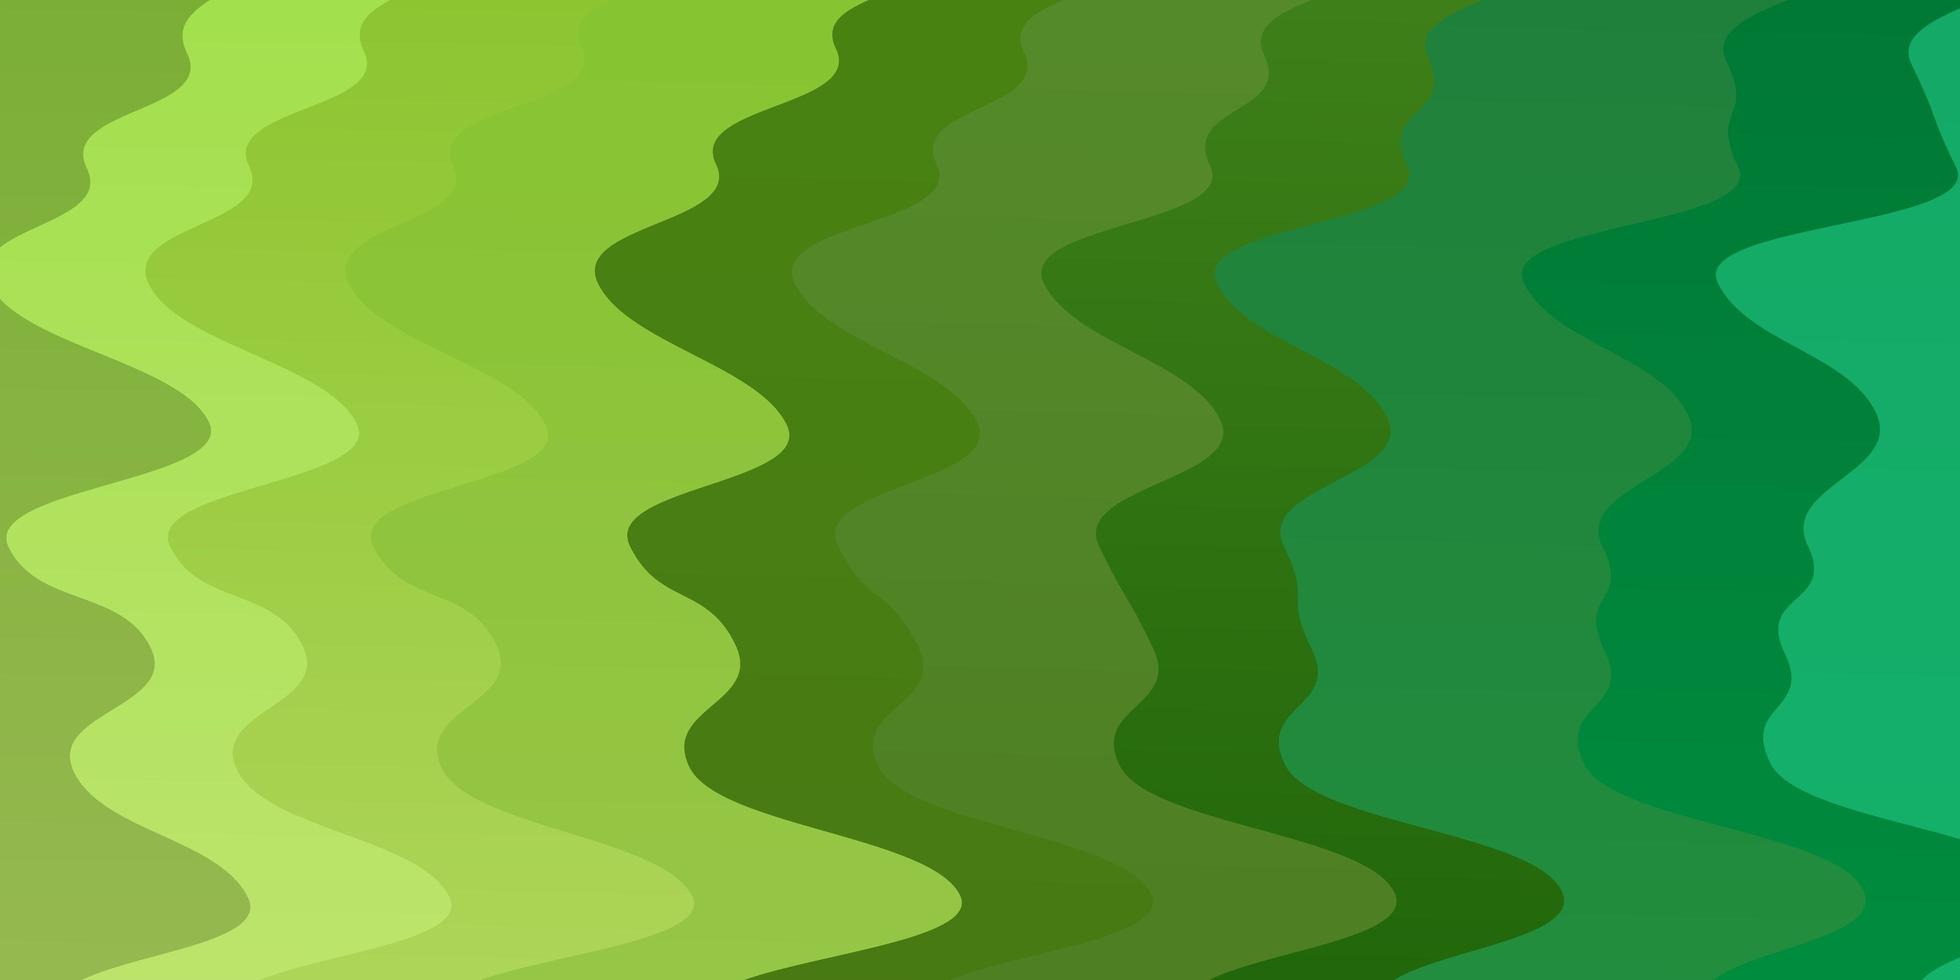 ljusgrönt vektormönster med böjda linjer vektor